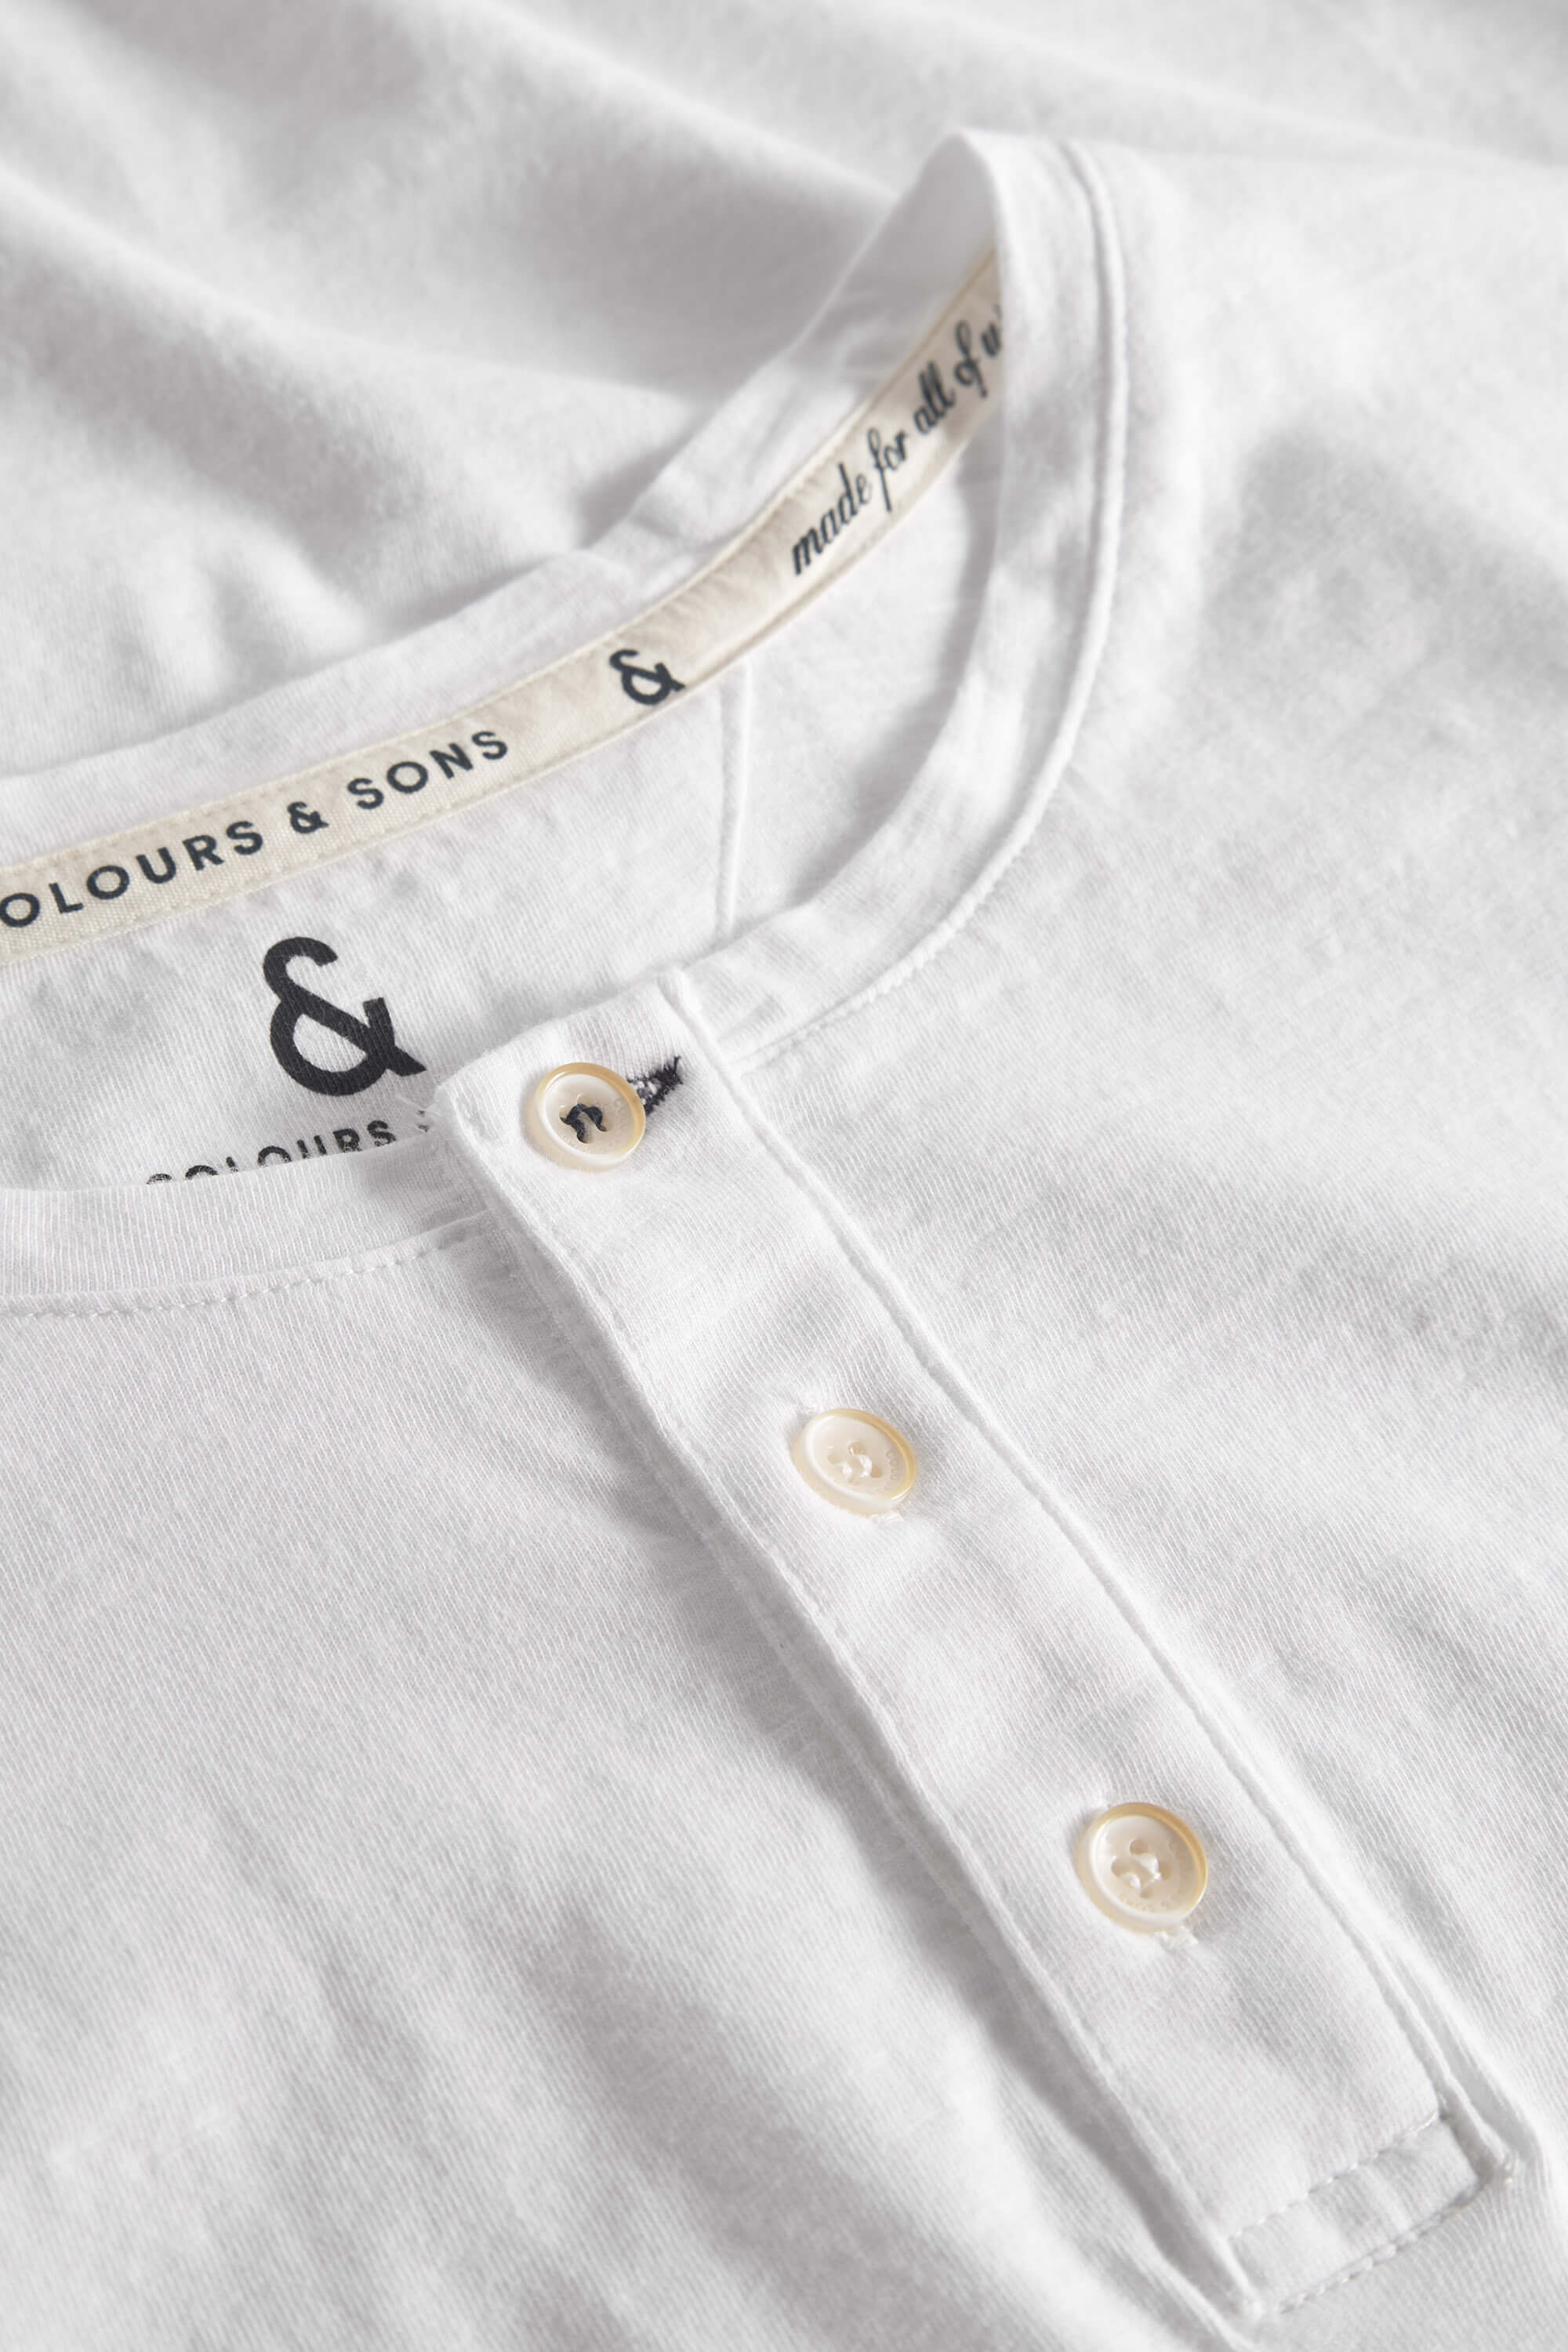 Herren Longsleeve Shirt, weiß, 100% Baumwolle von Colours & Sons